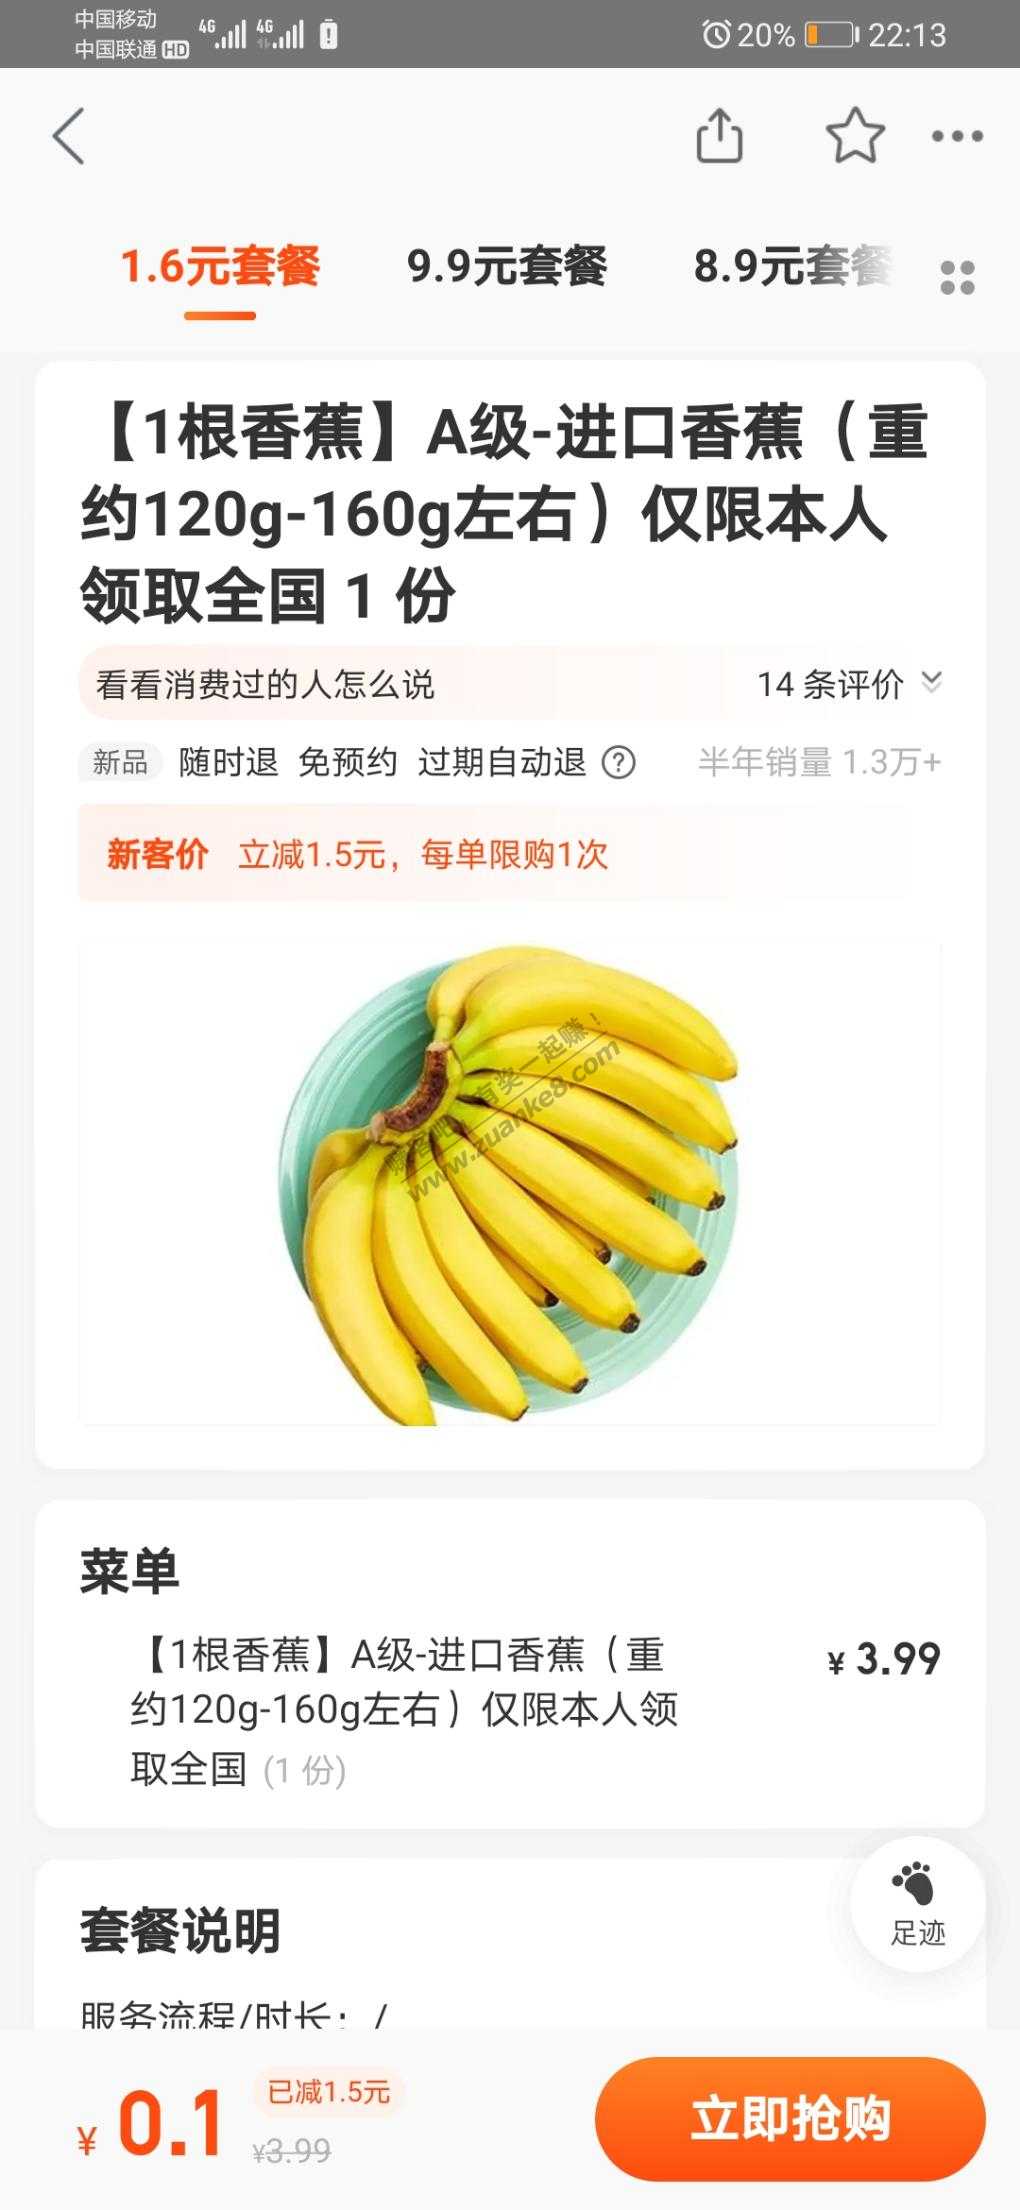 百果园0.1一根香蕉-美团大众各一份。